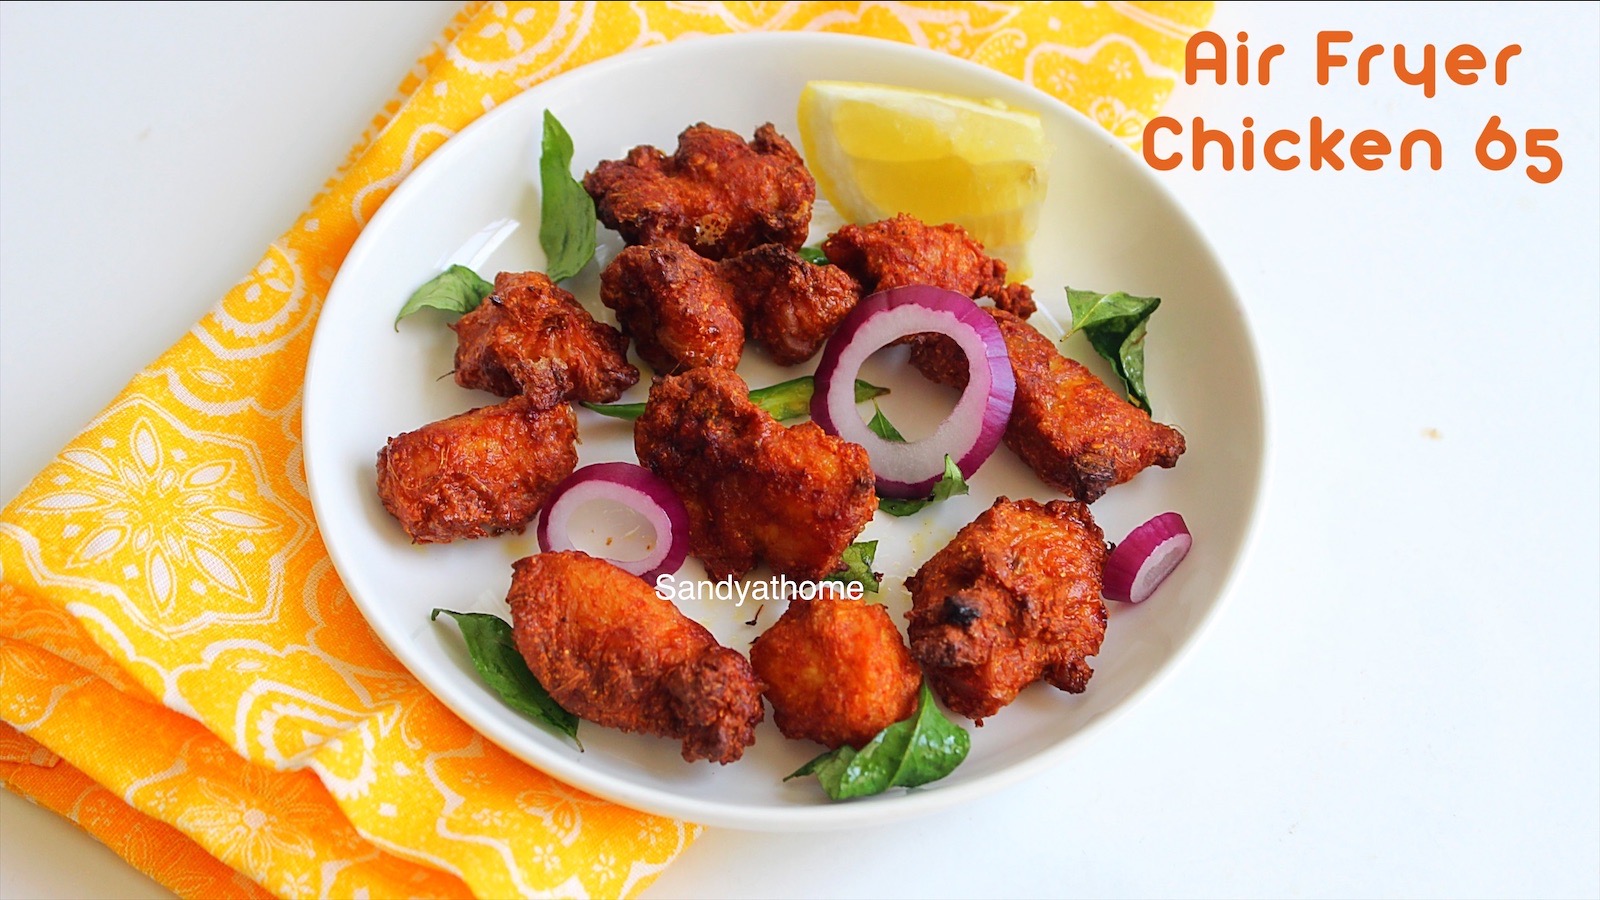 Air fryer chicken 65 recipe, Chicken 65 in air fryer - Sandhya's recipes